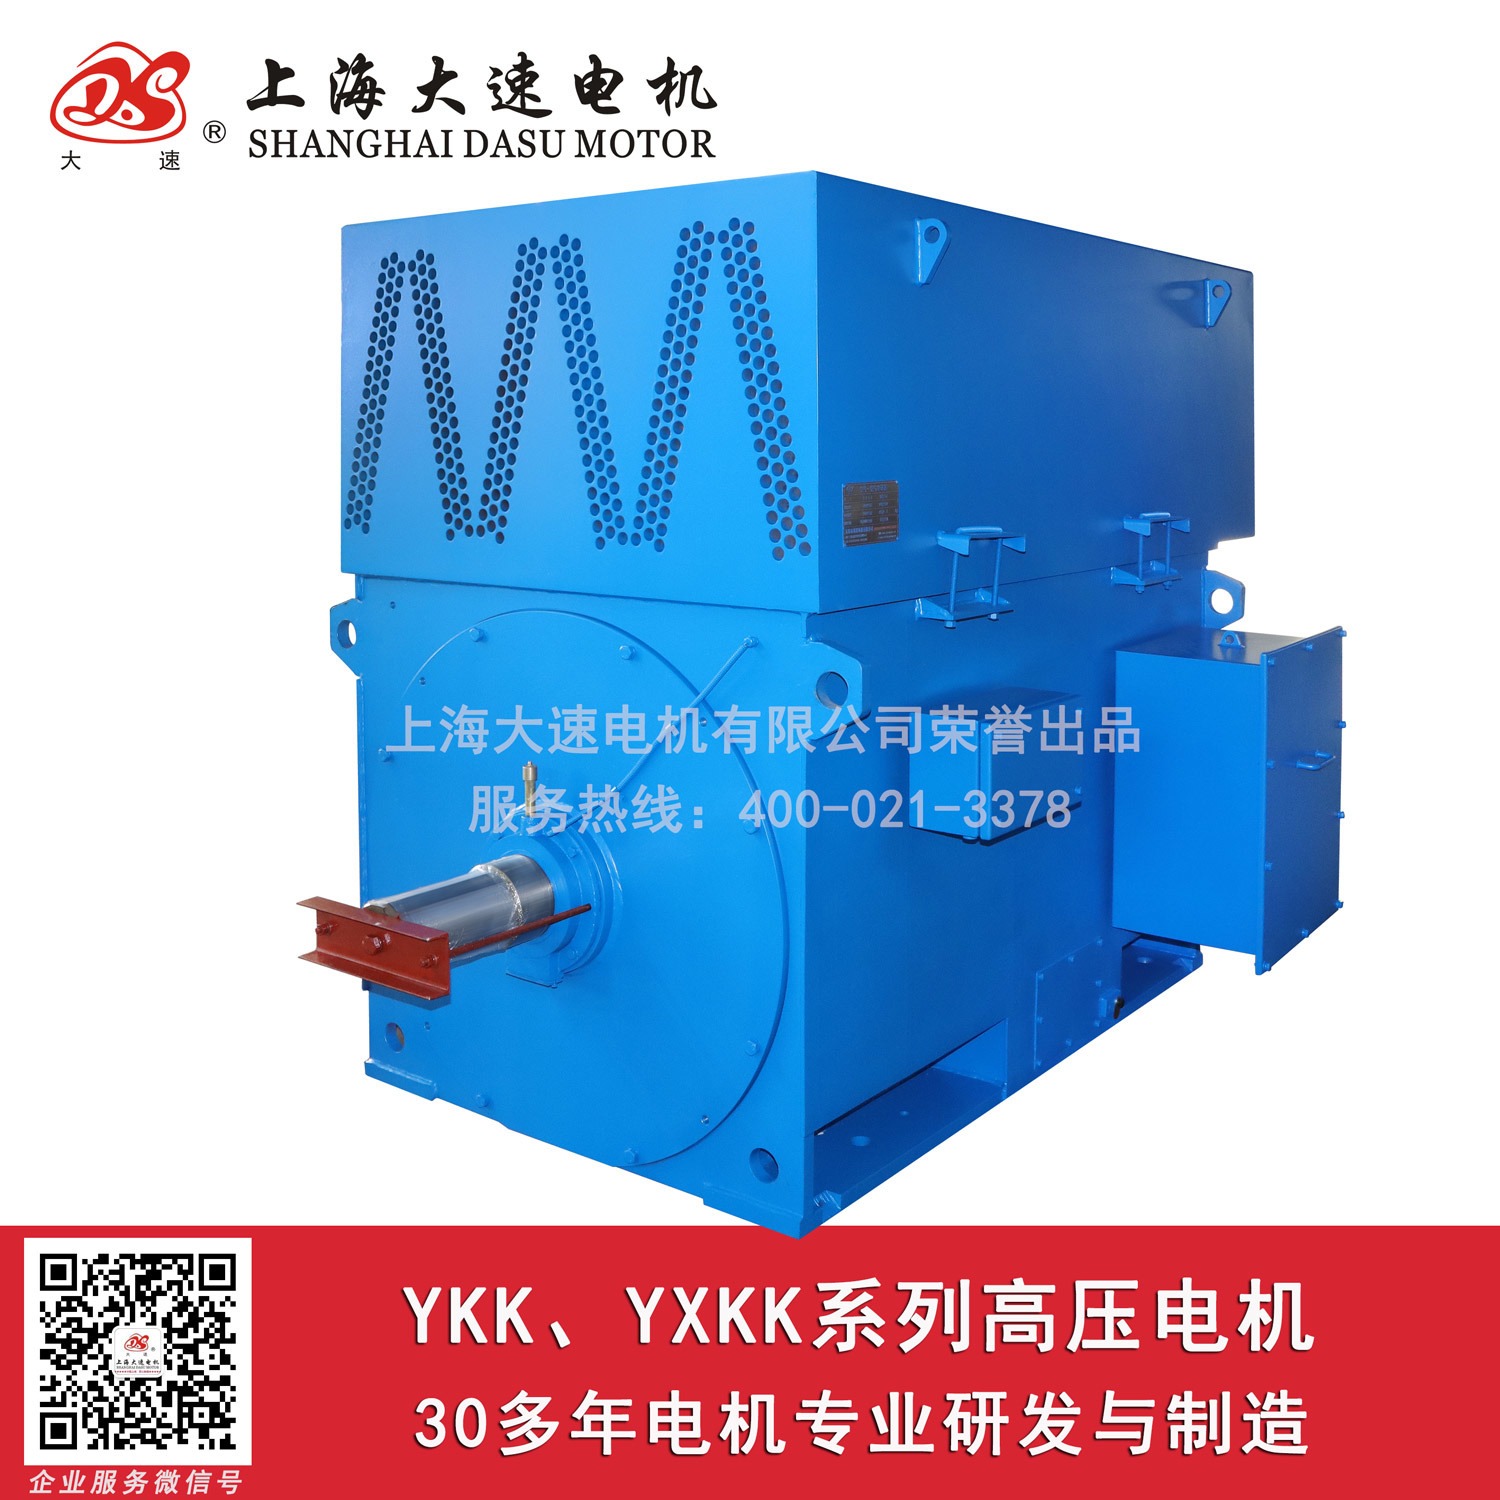 上海大速电机10KV 6KV YKK高压电机 防爆高压电机 电机厂家直销图片